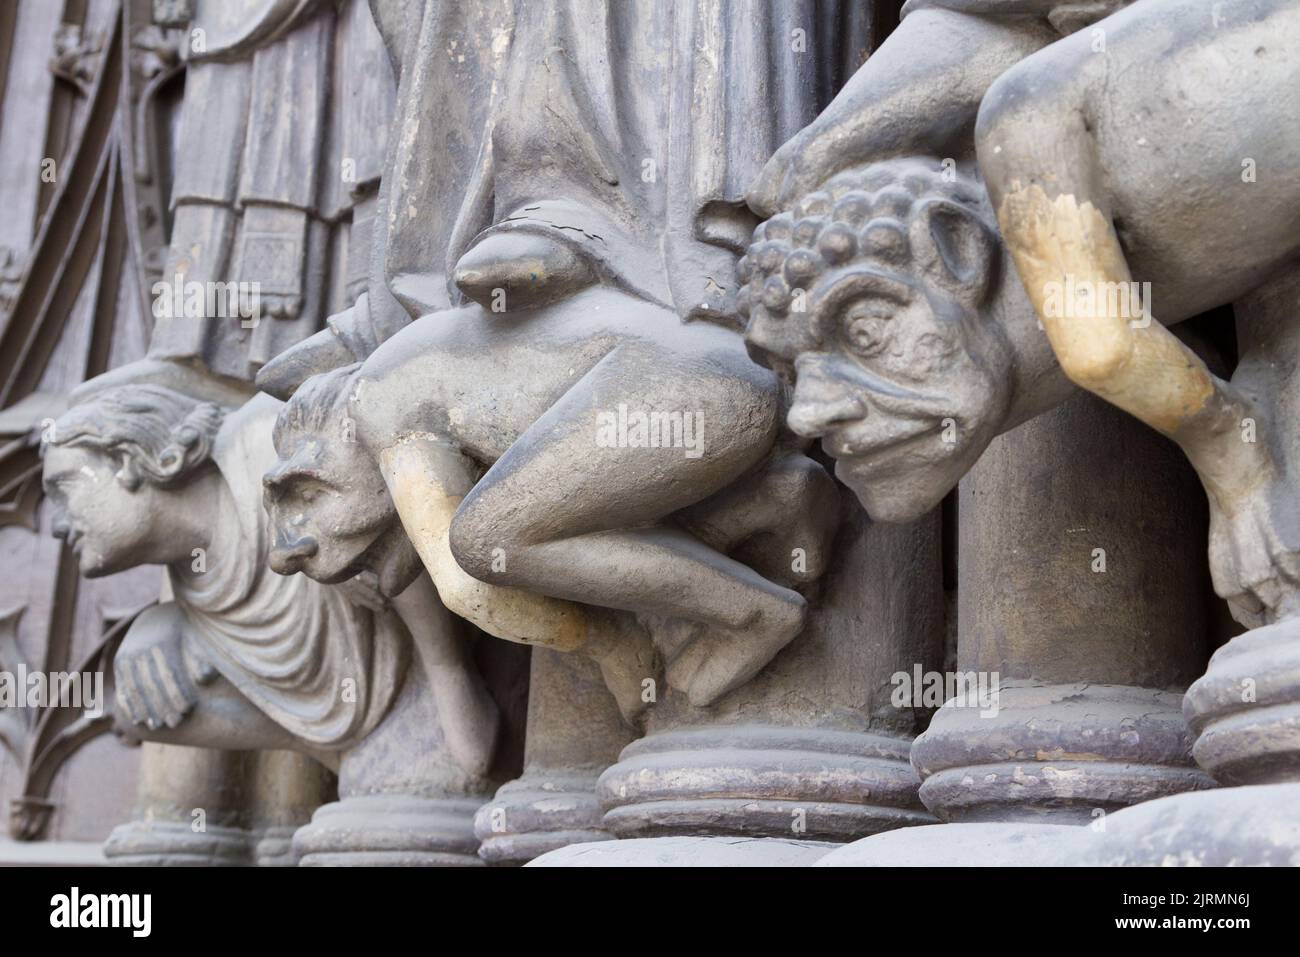 Sinners - Porch of Saint-Germain l’Auxerrois, Place du Louvre, Paris Stock Photo